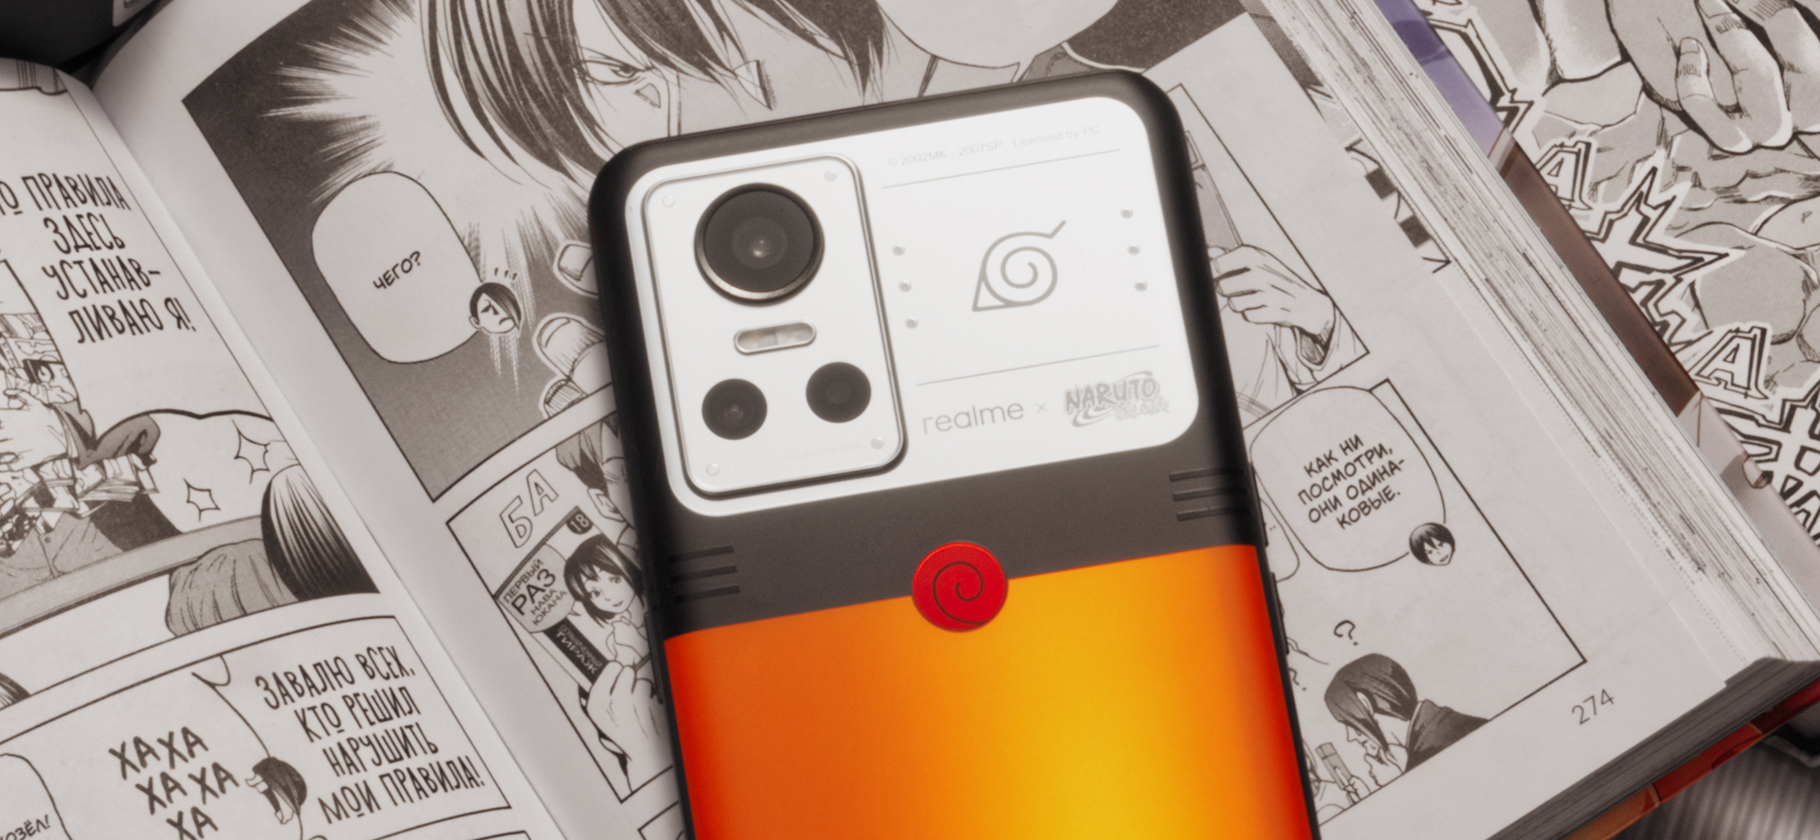 Realme GT Neo 3 Naruto Edition — это редкий смартфон с аниме-дизайном. Мы его раздобыли